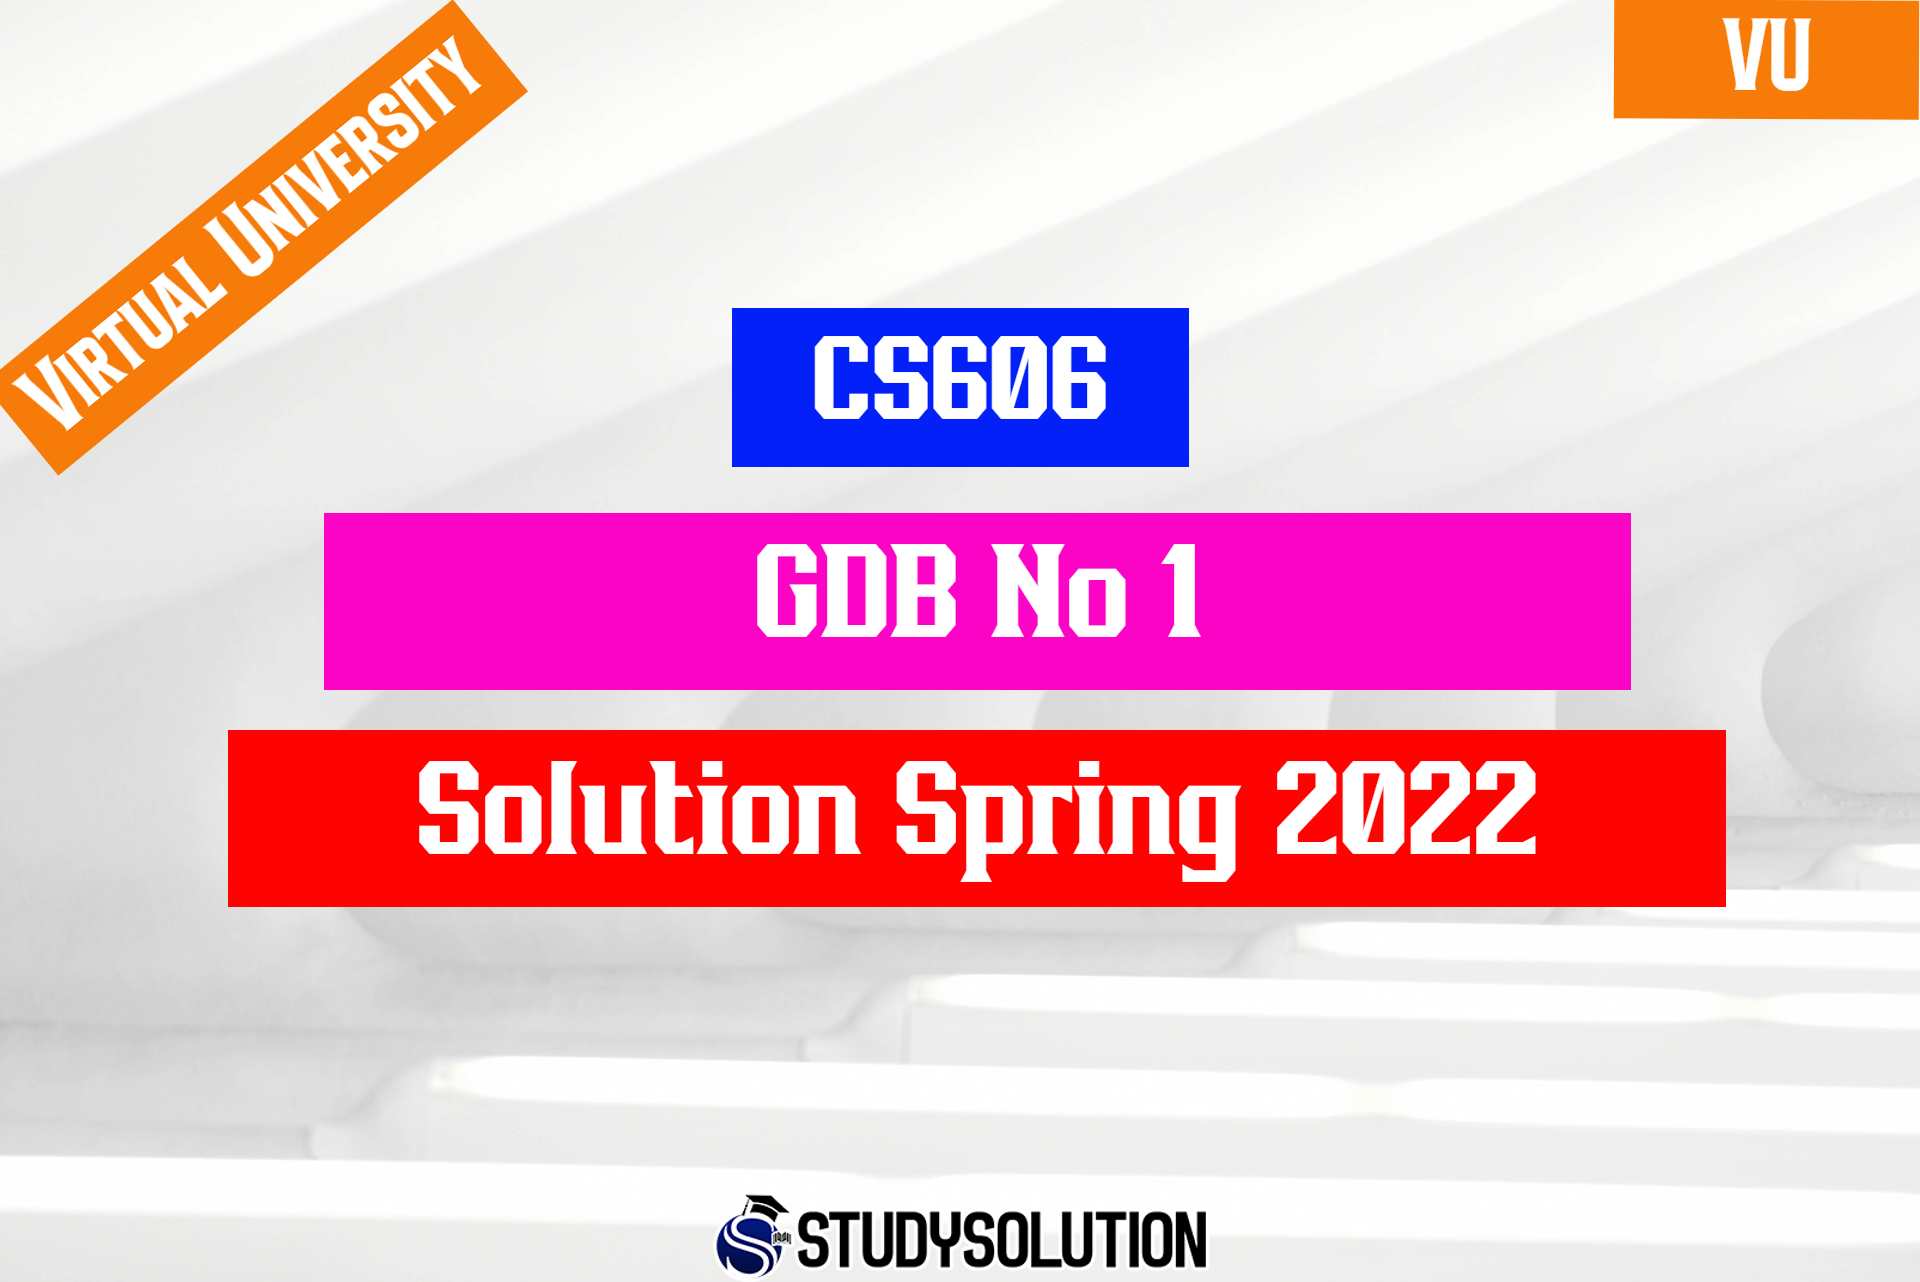 CS606 GDB No1 Solution Spring 2022